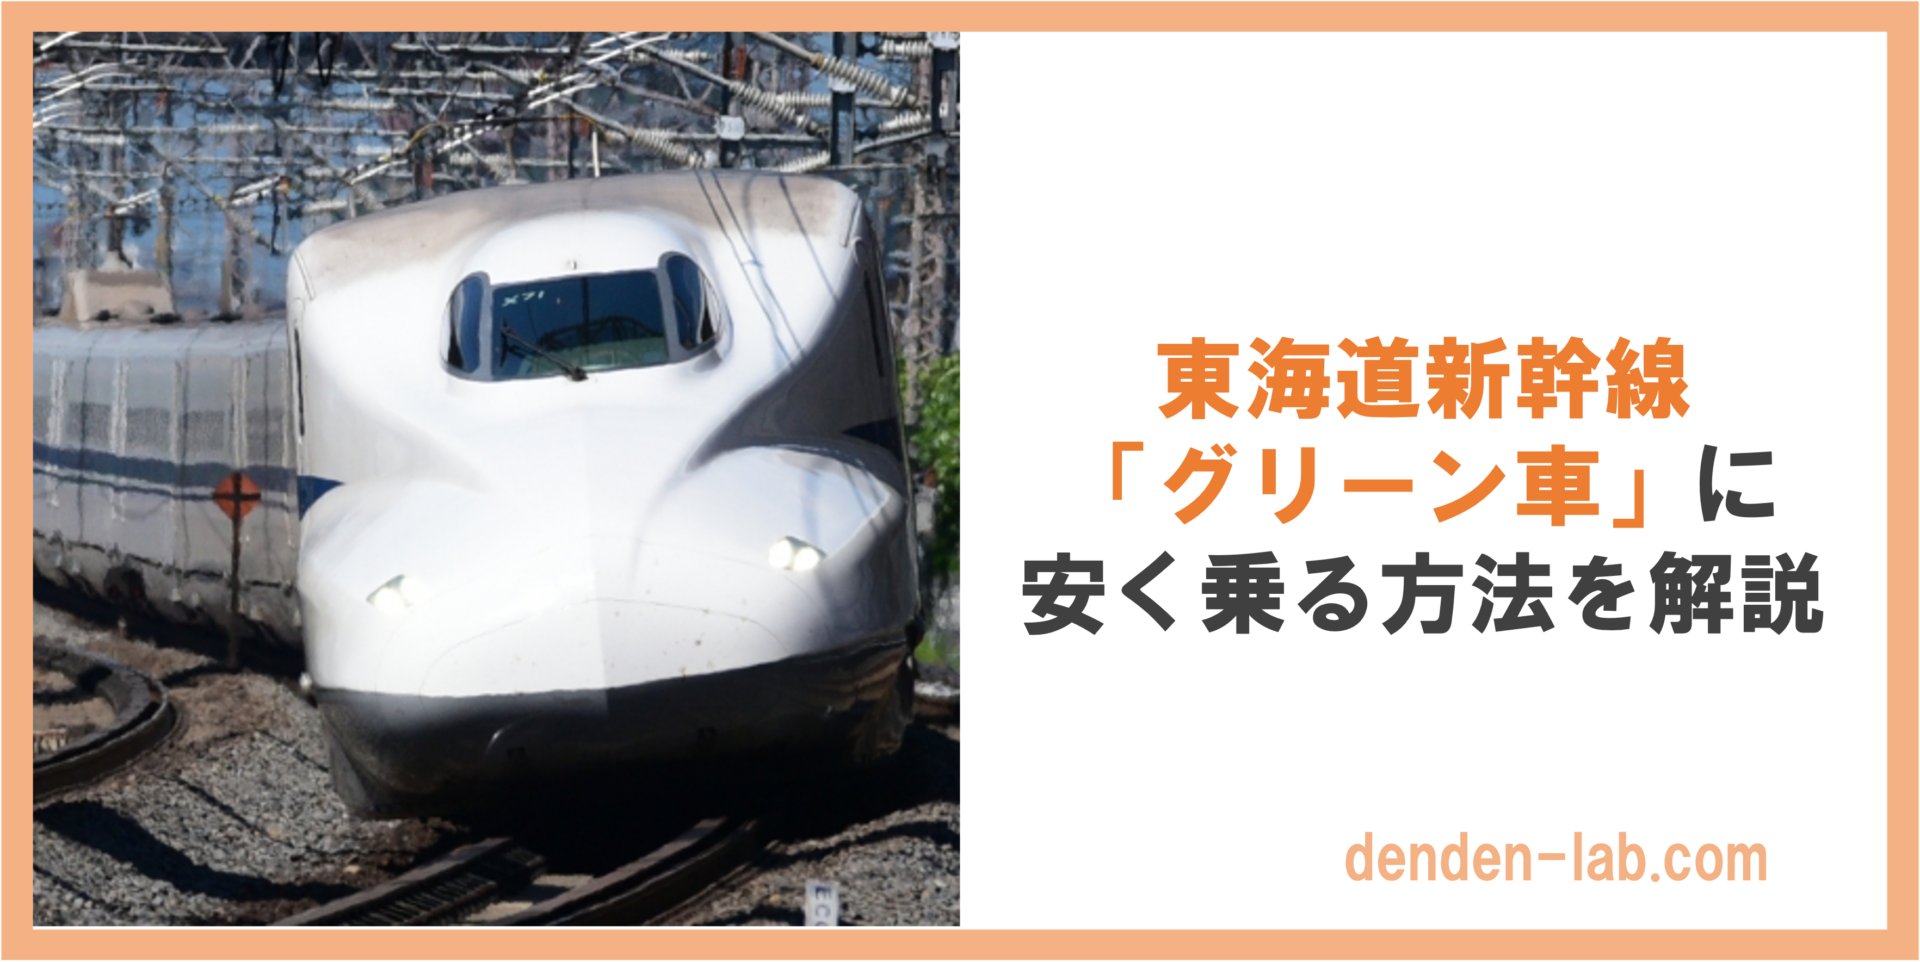 東海道新幹線 「グリーン車」に 安く乗る方法を解説